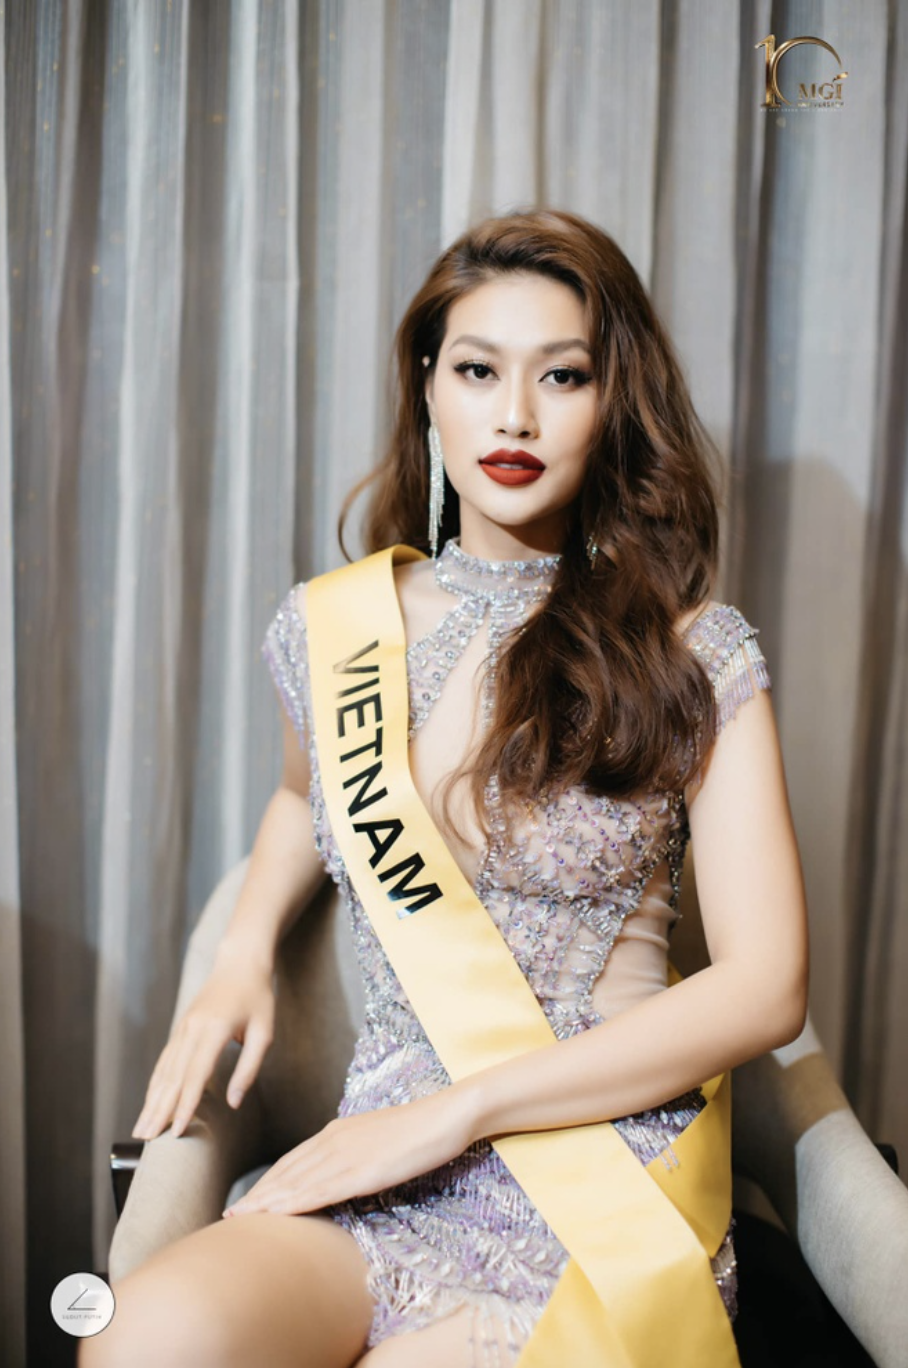 Đoàn Thiên Ân, sinh năm 2000, hiện là sinh viên của trường Đại học Công nghiệp TP.HCM. Tháng 10/2022, Thiên Ân đại diện Việt Nam thi Miss Grand International - Hoa hậu Hòa bình Quốc tế 2022, tại Indonesia và dừng chân sớm ở top 20